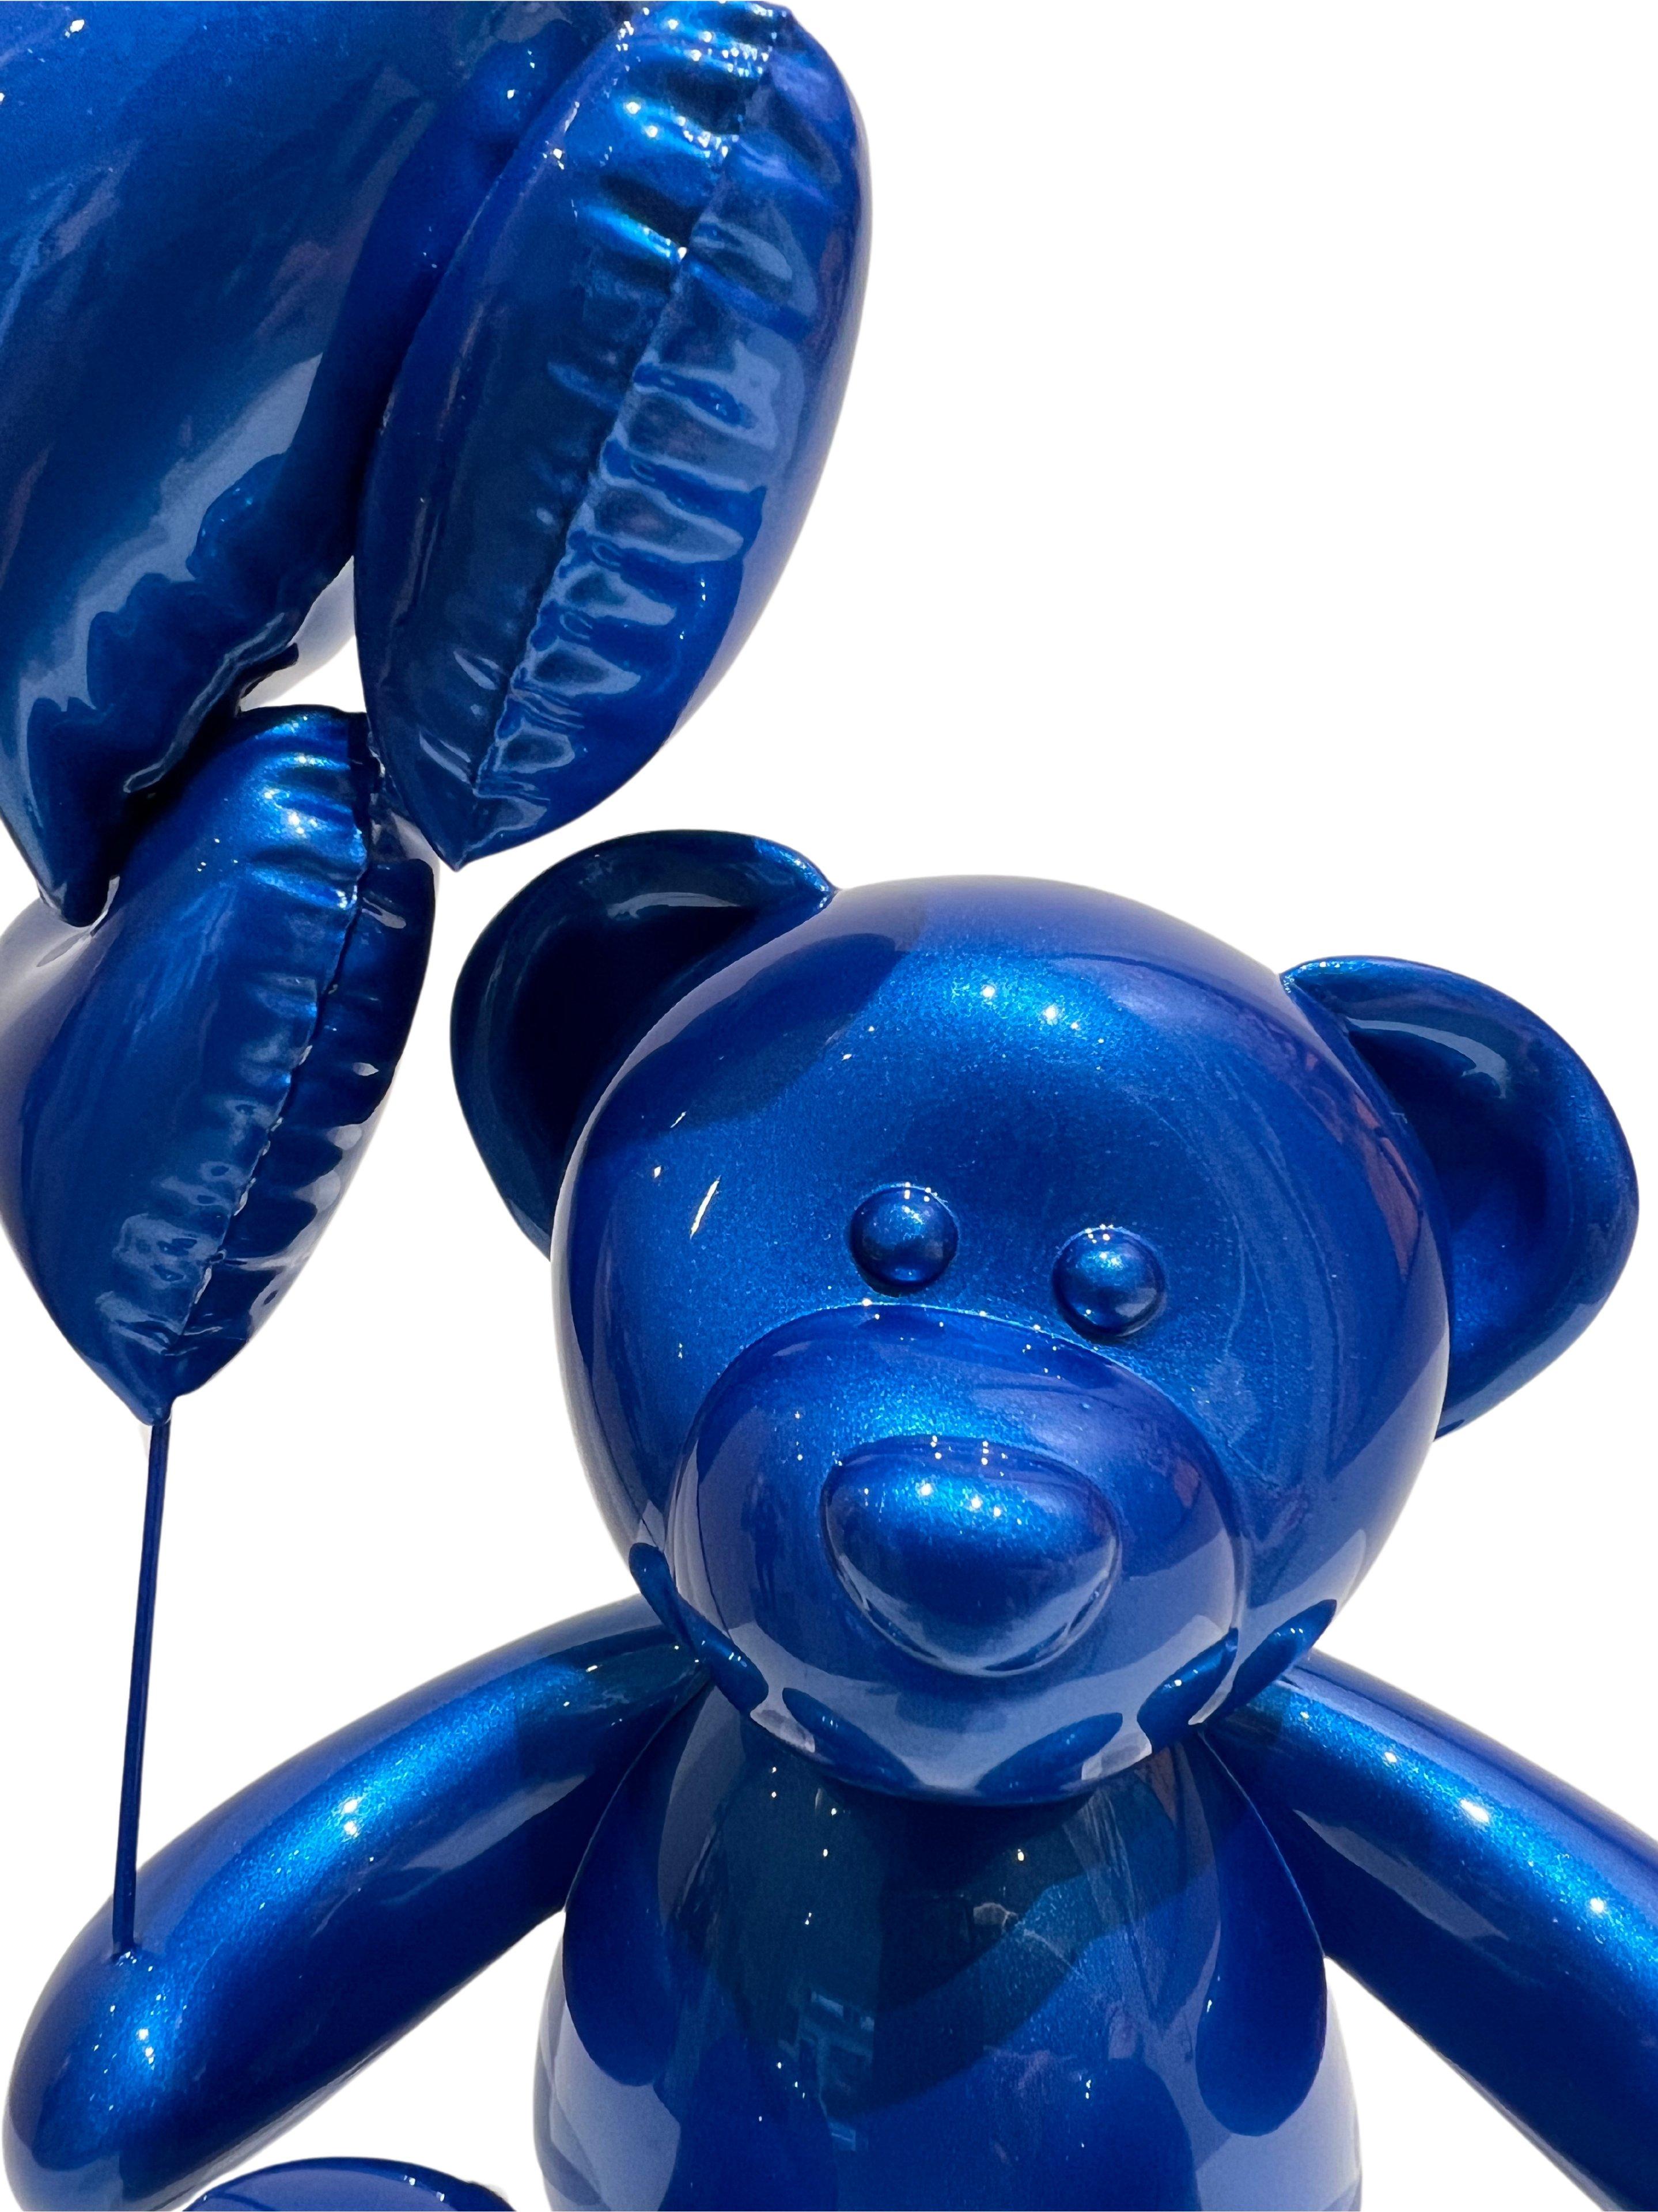 Teddy Love - Bleu Côte d'Azur - Sculpture by Nicolas Krauss